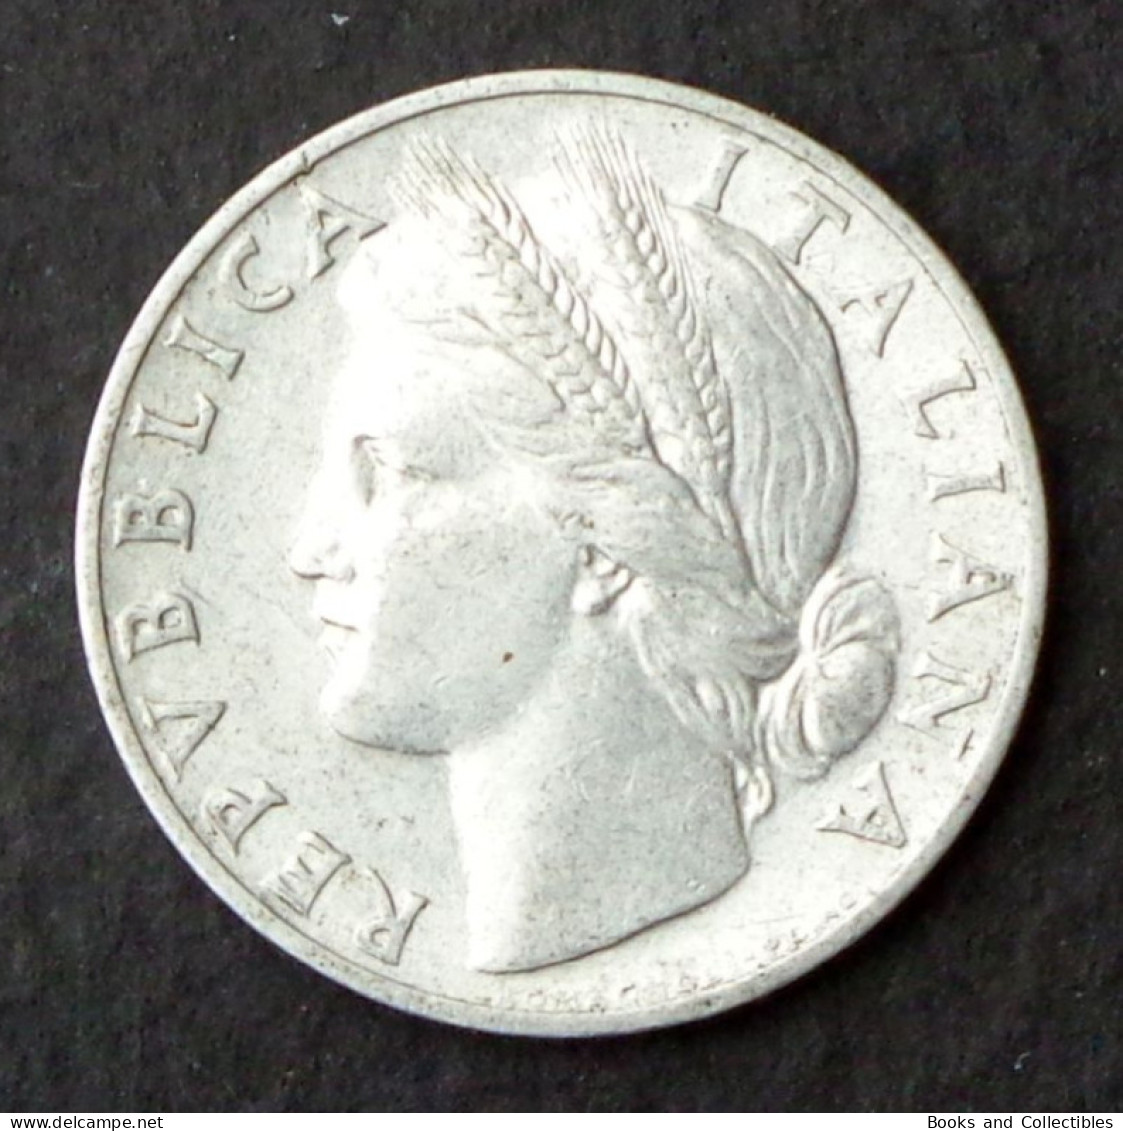 ITALY - 1 Lira 1948 - KM# 87 * Ref. 0081 - 1 Lira